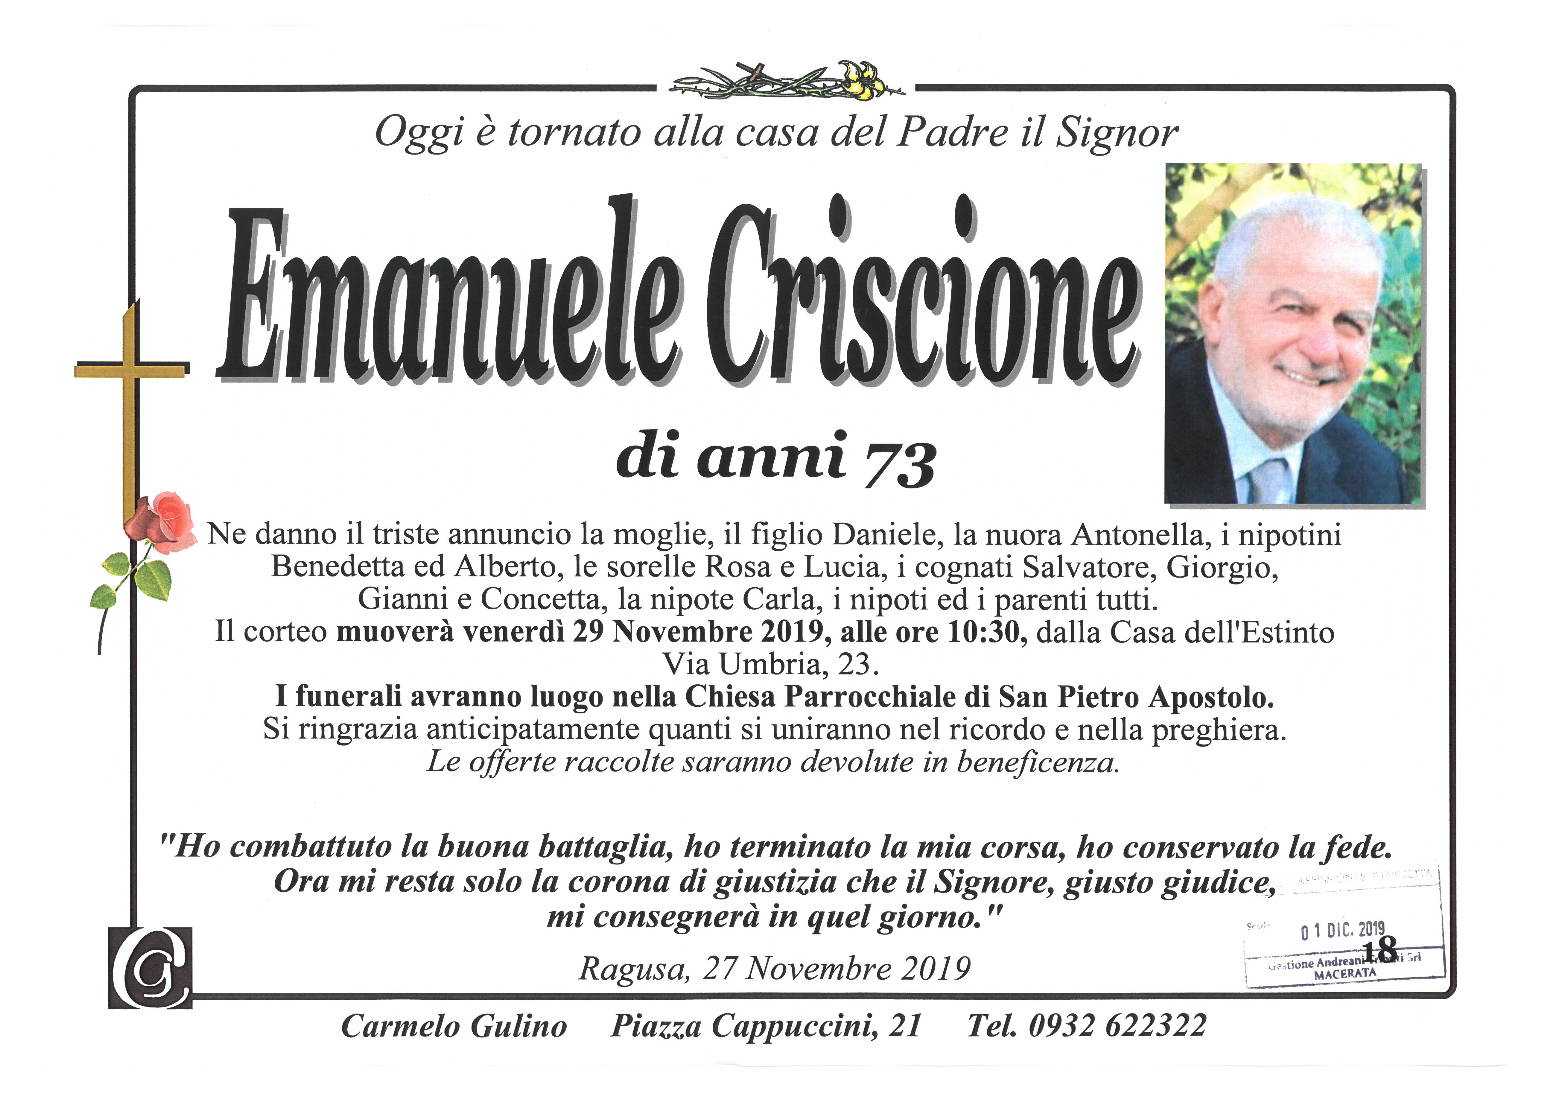 Emanuele Criscione